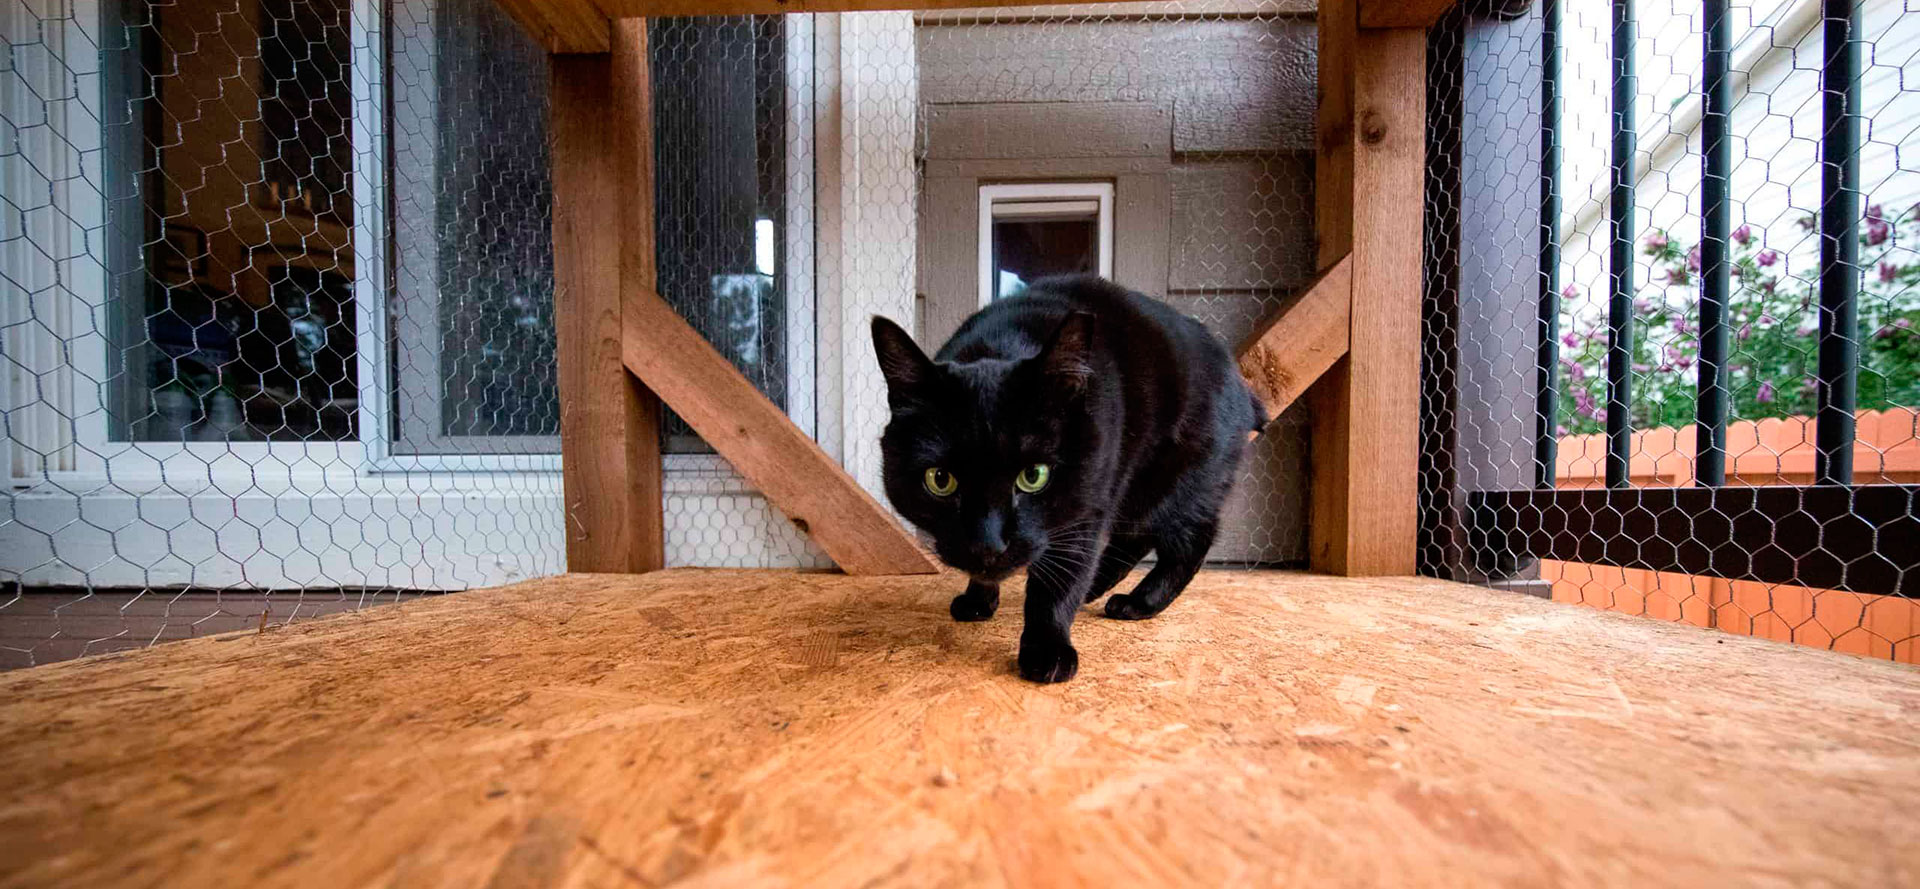 Cat running through Outdoor Cat Enclosure.